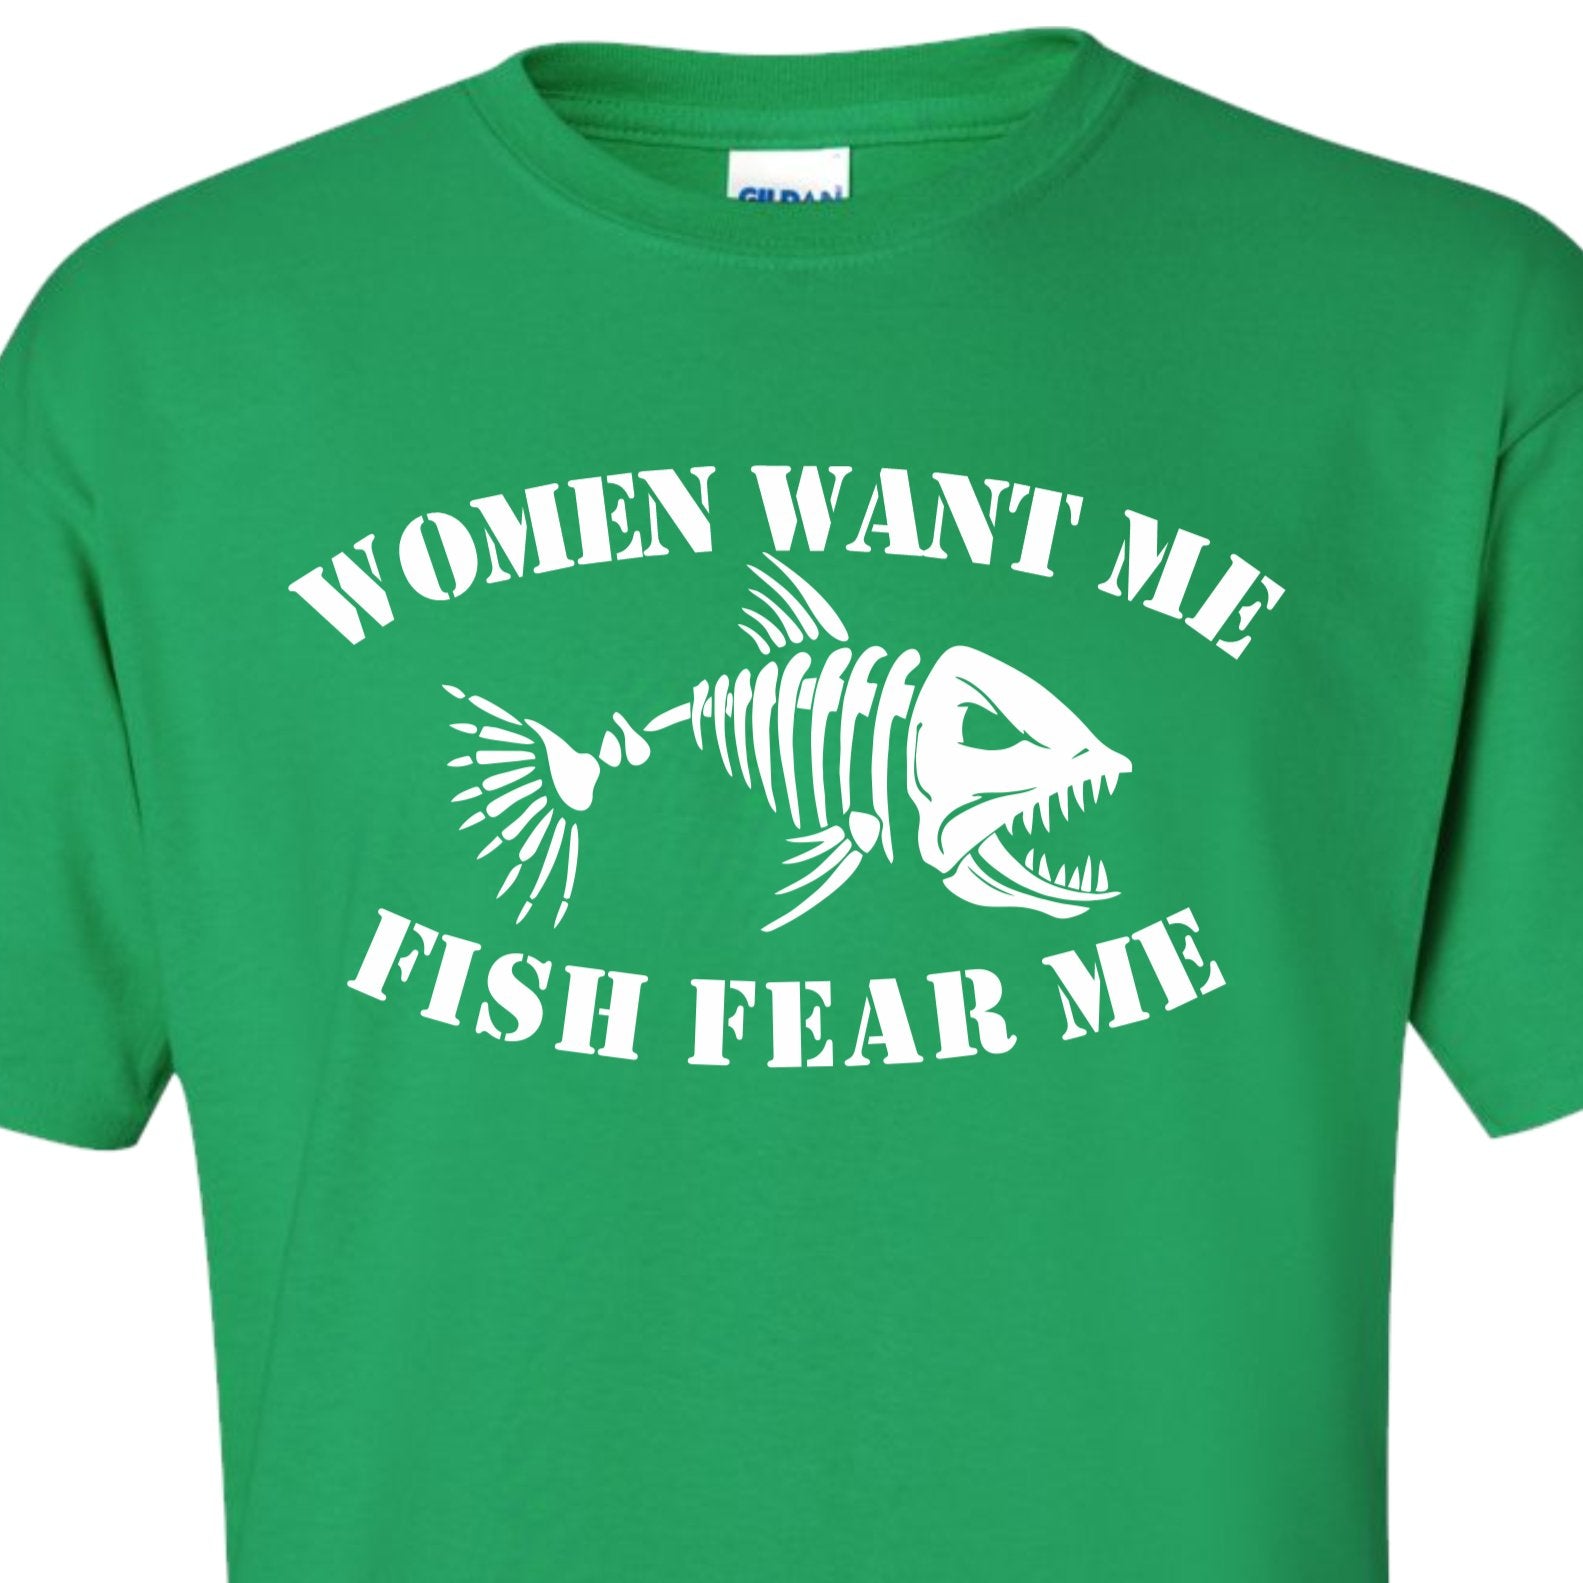 Women Want Me, Fish Fear Me T Shirt, Fishing Tee Shirt XL / Royal